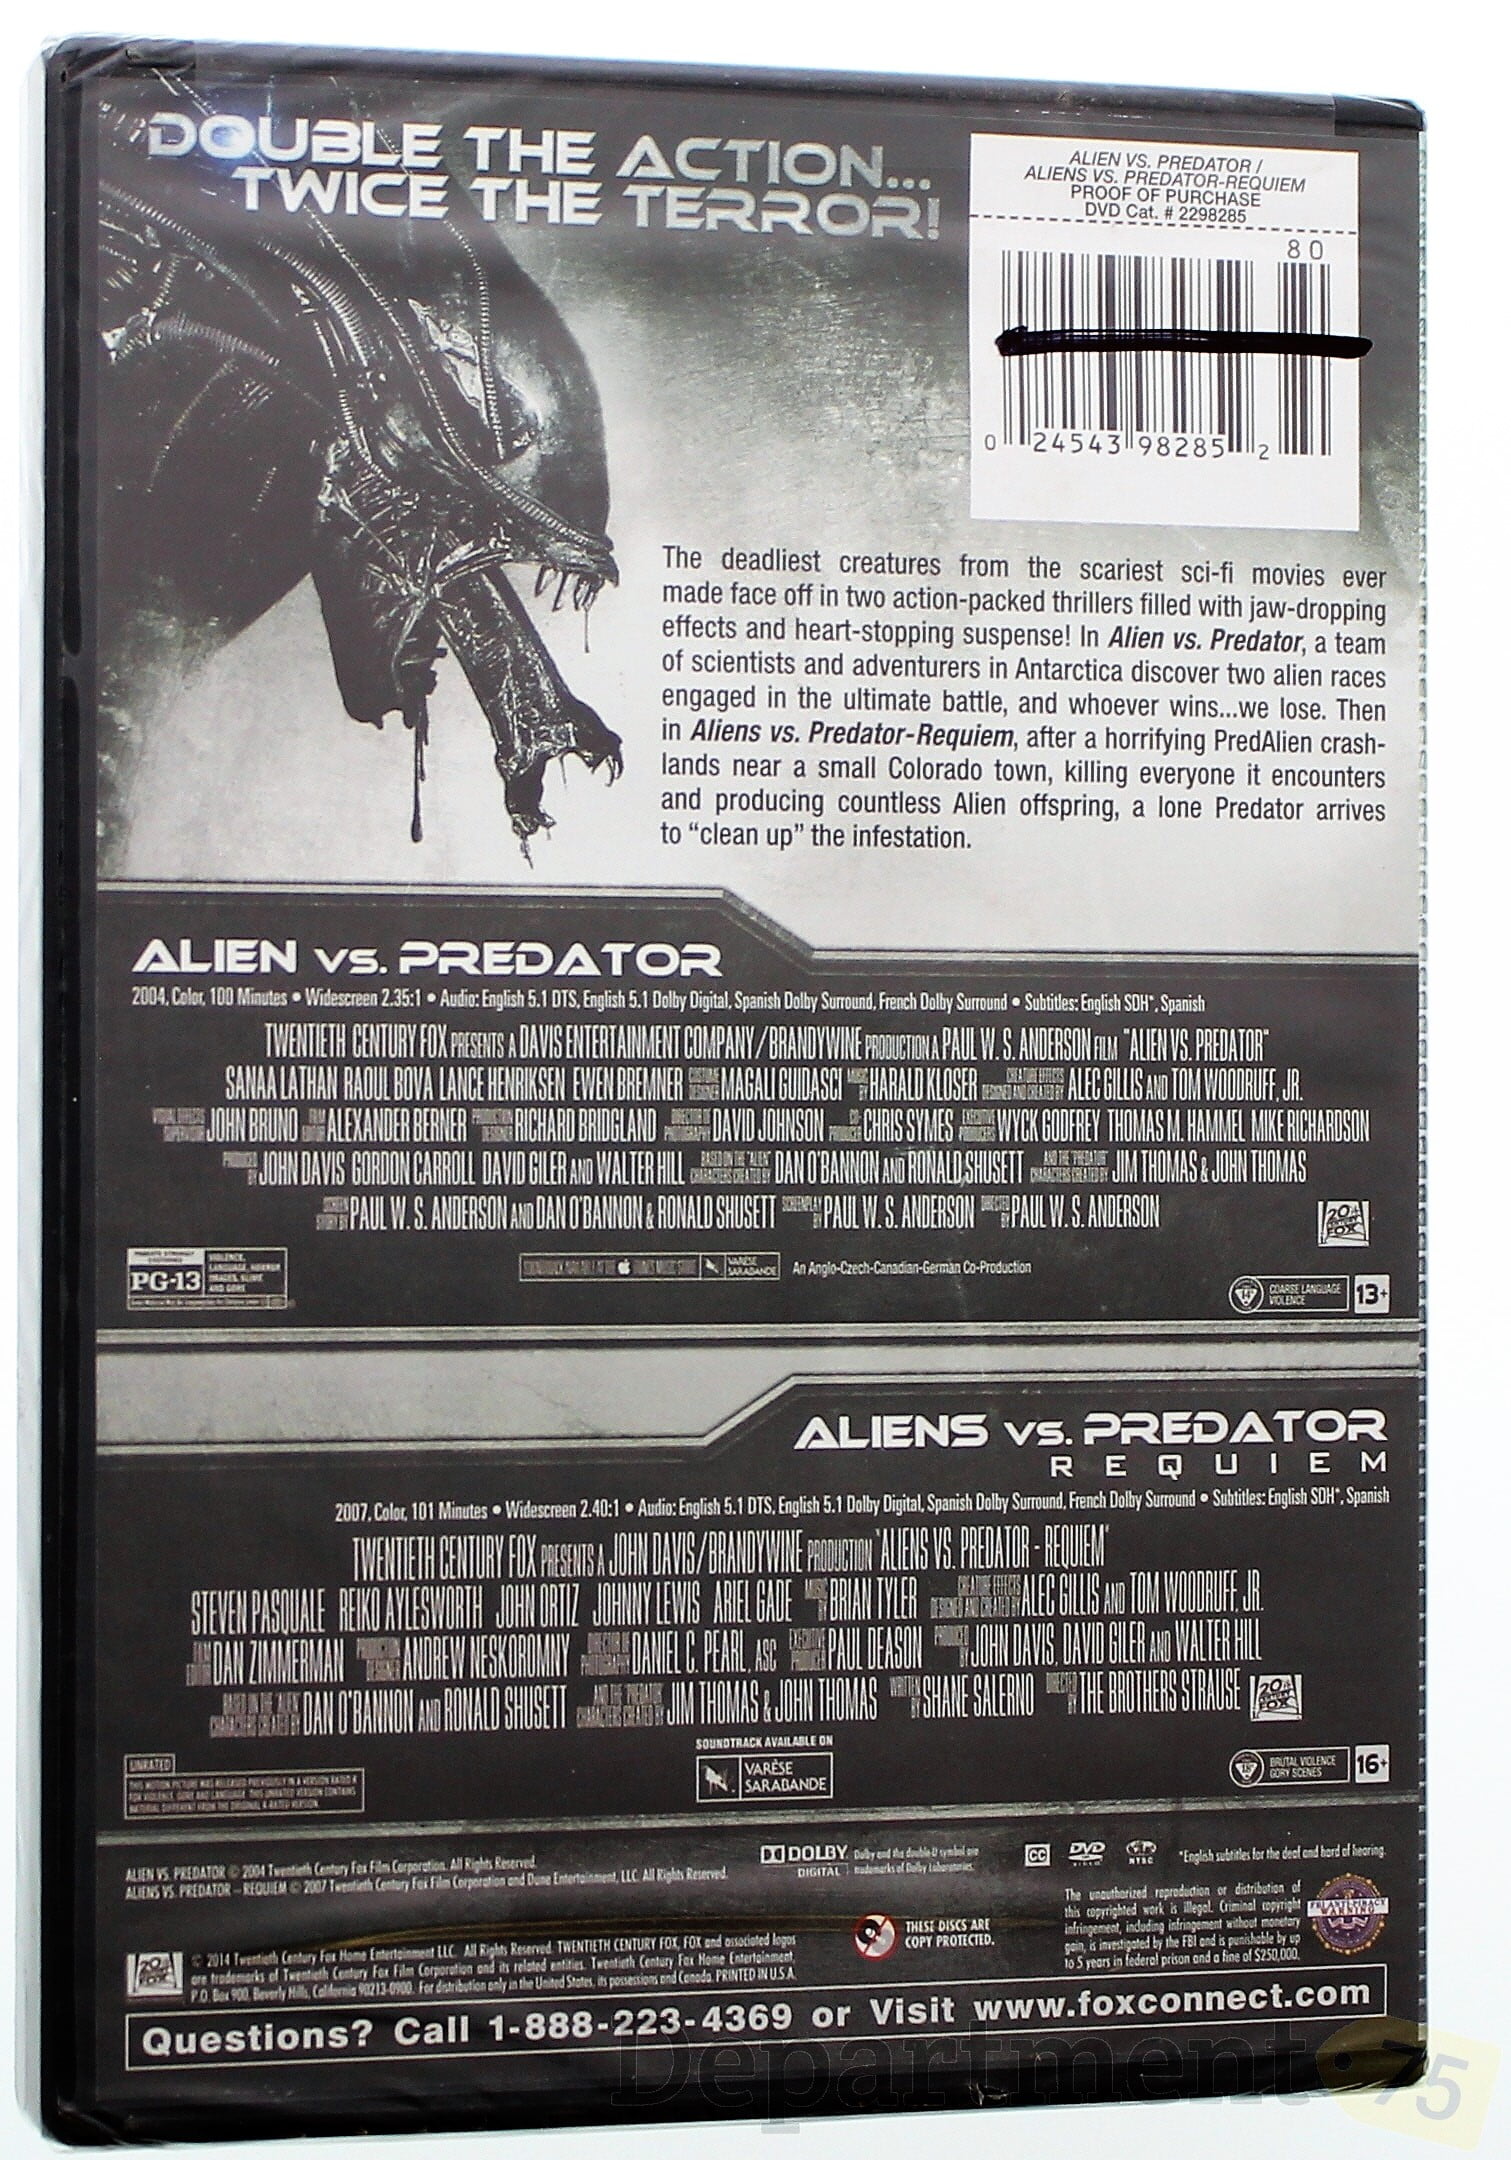 AVP: Alien vs. Predator (Widescreen Edition) - DVD - GOOD